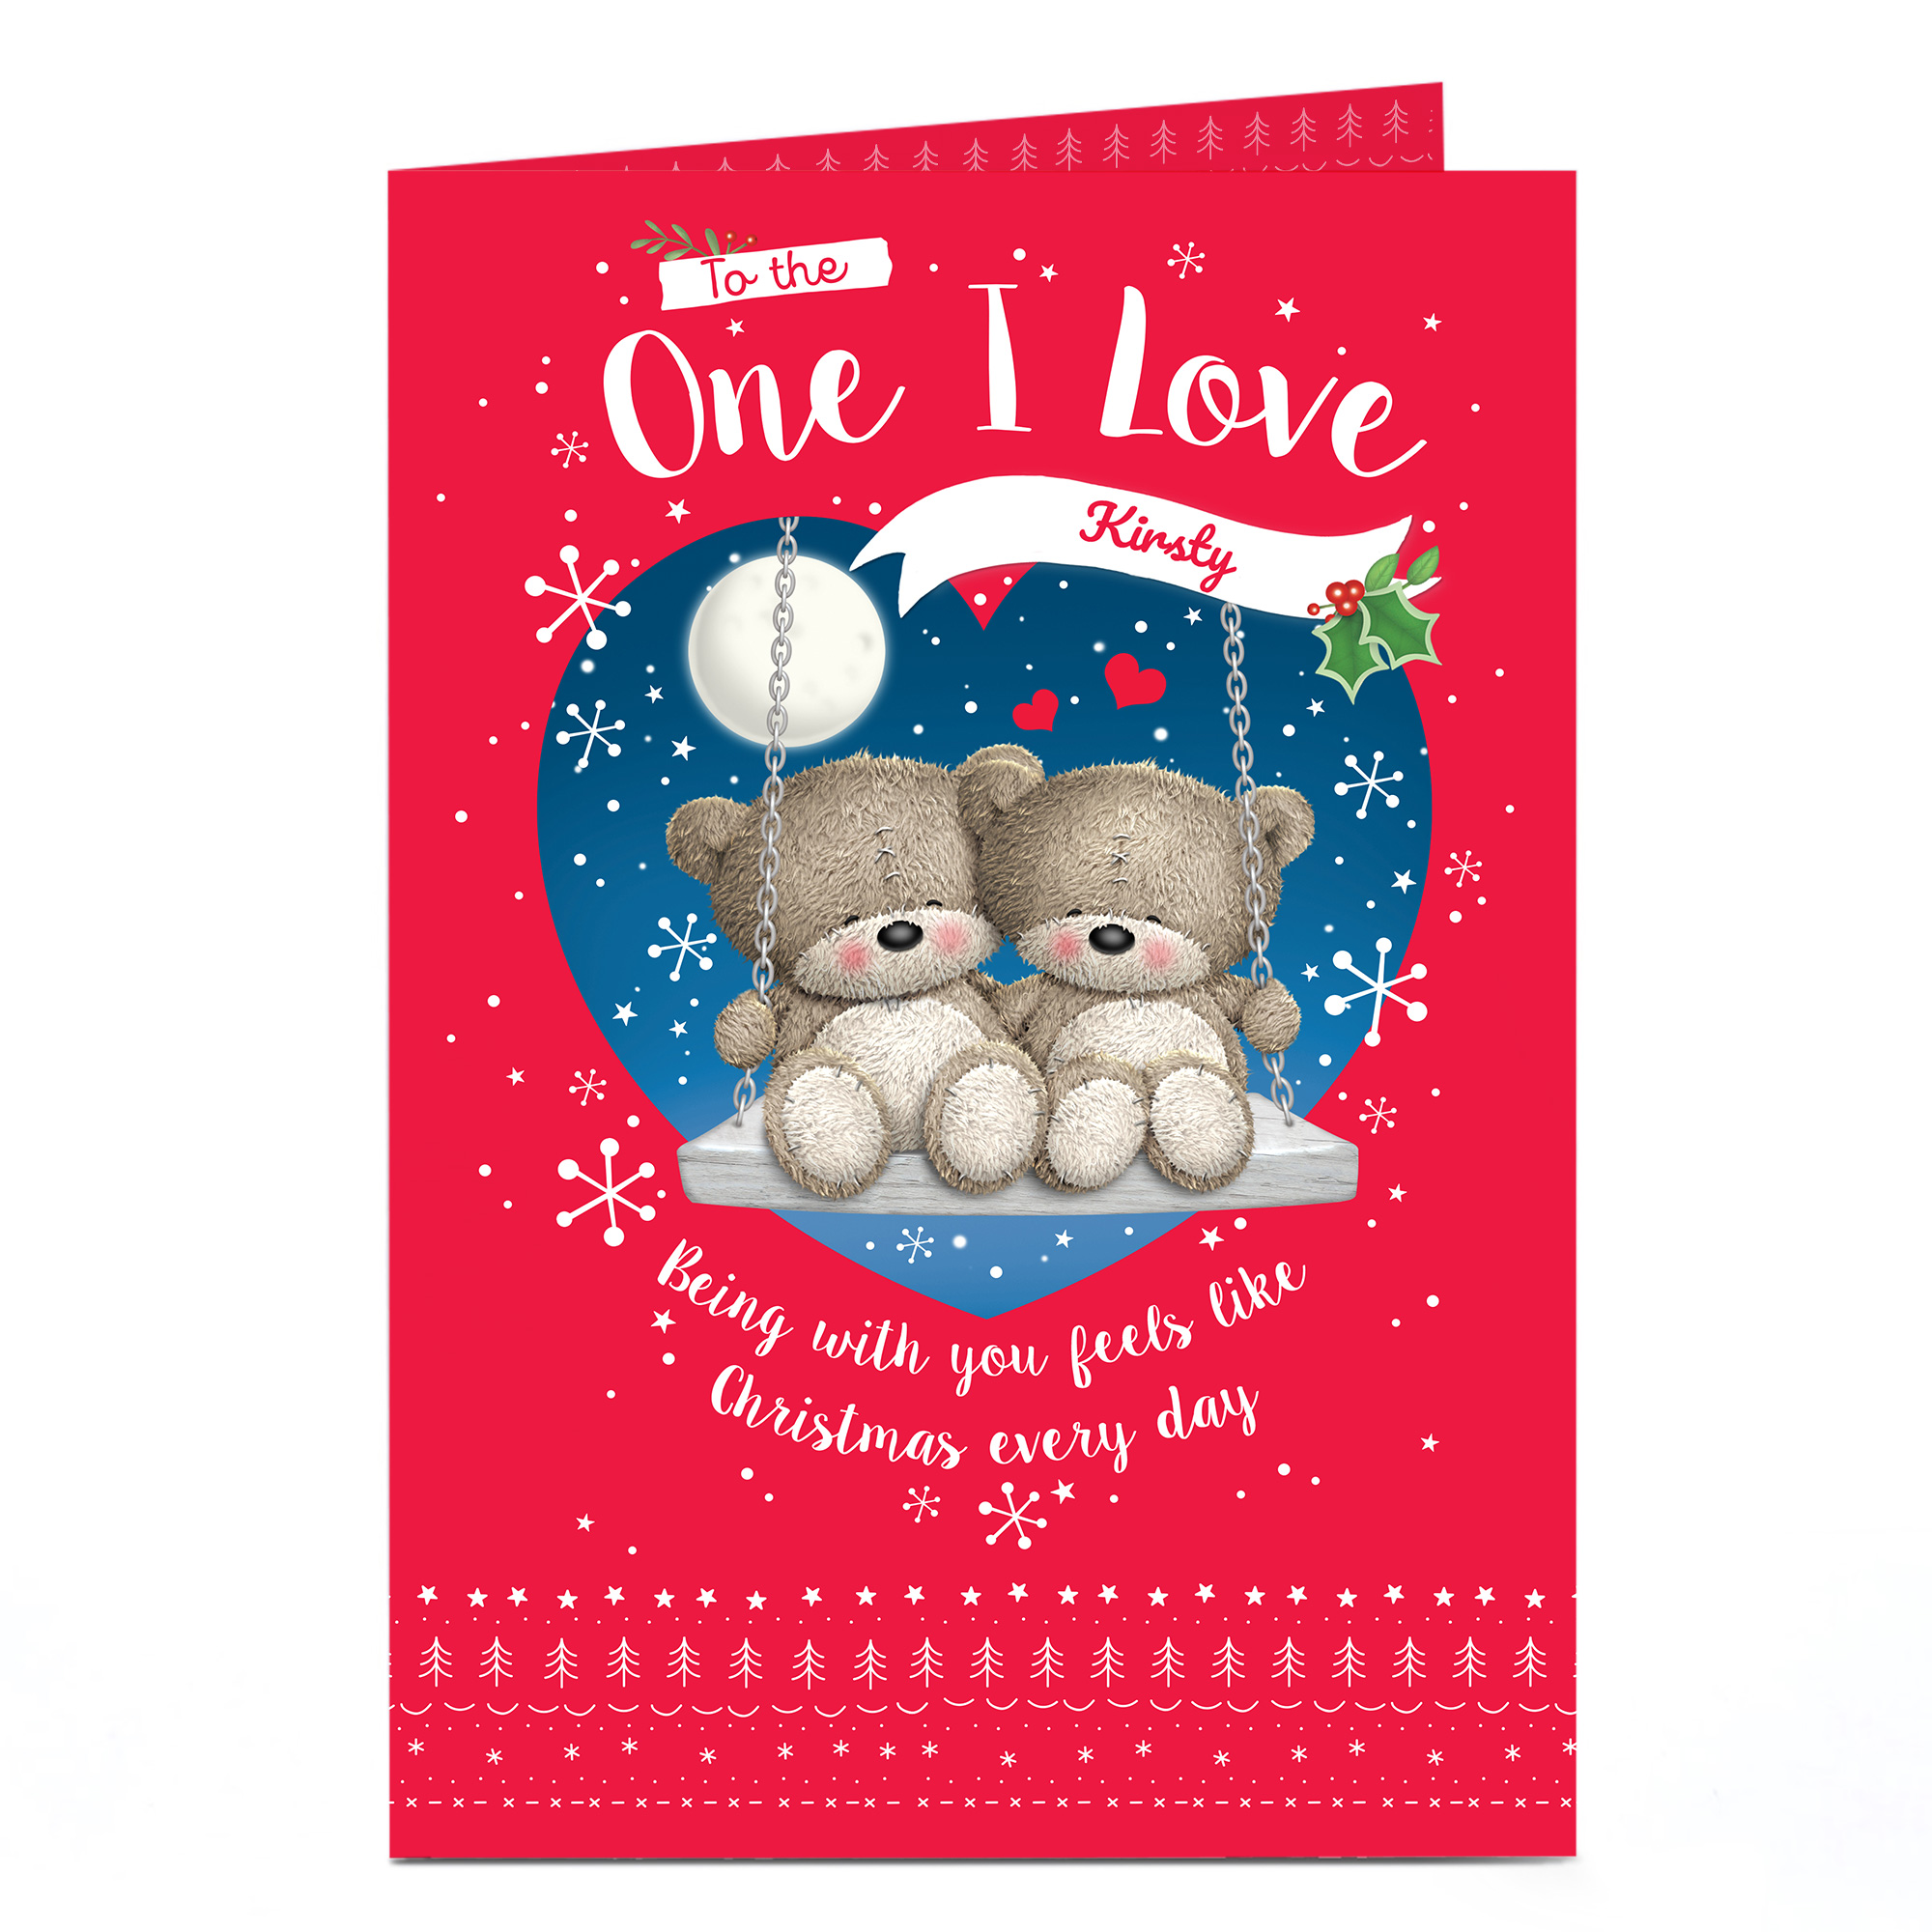 i-love-you-christmas-cards-ubicaciondepersonas-cdmx-gob-mx